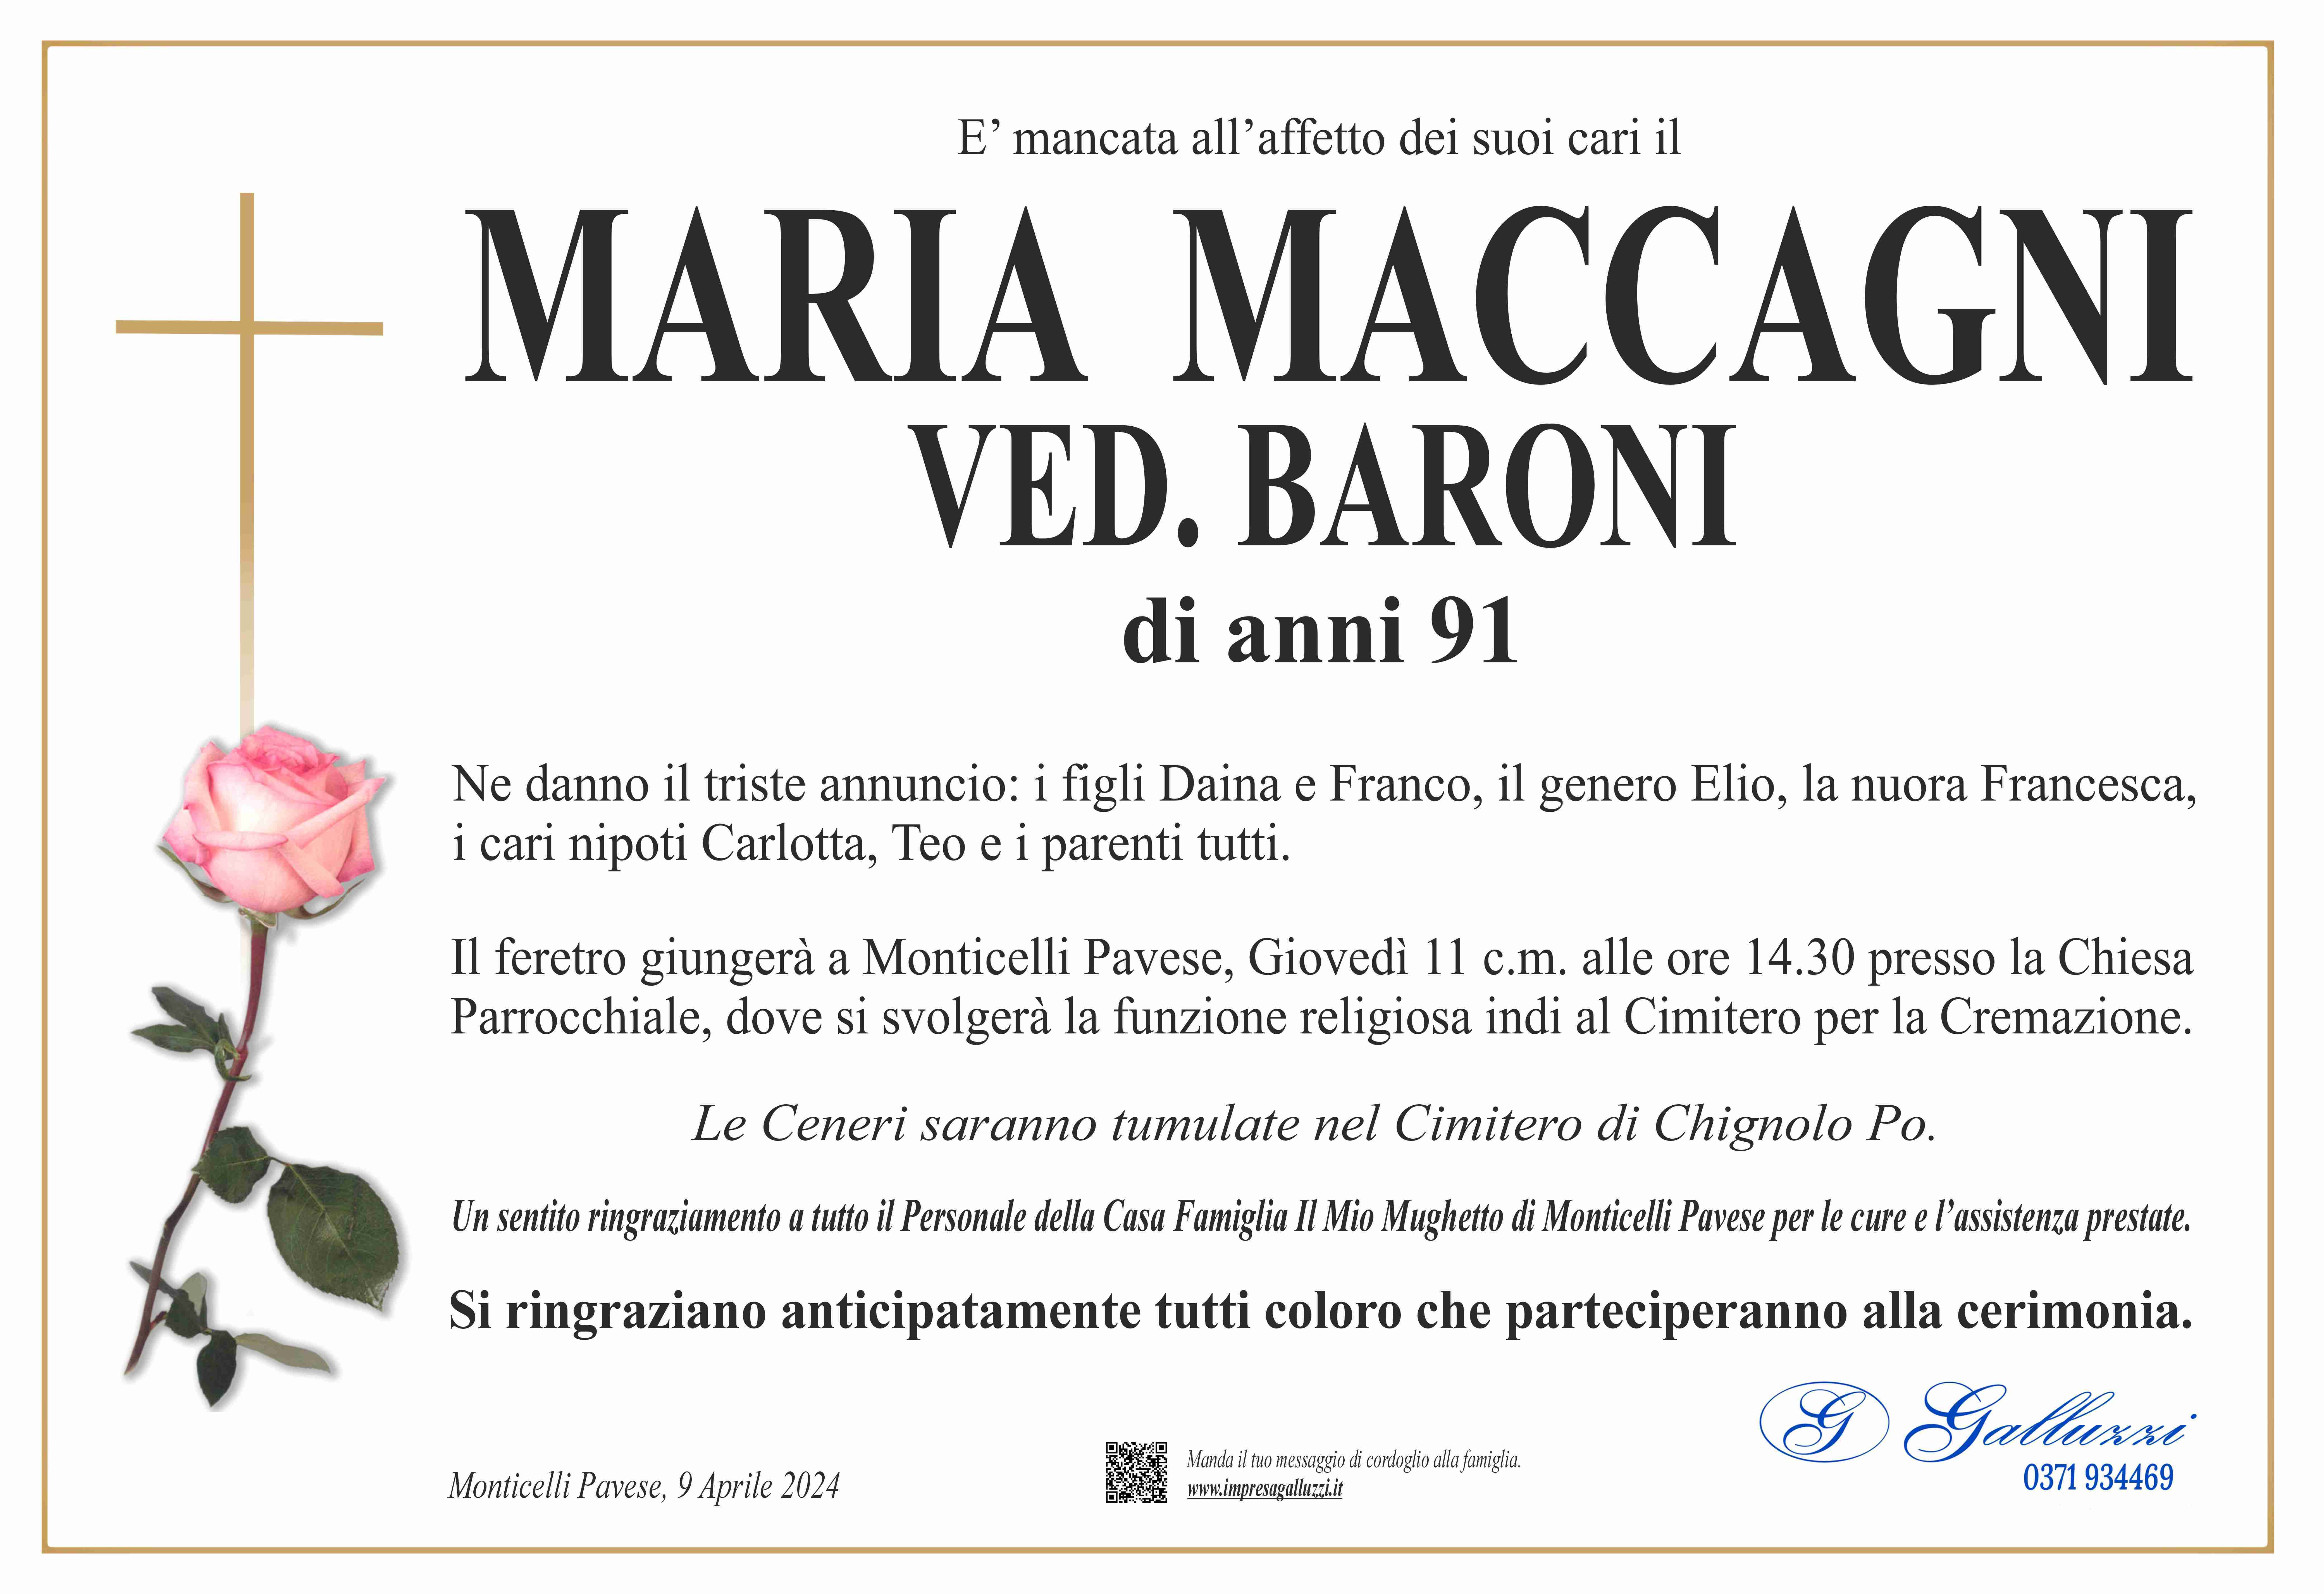 Maria Maccagni